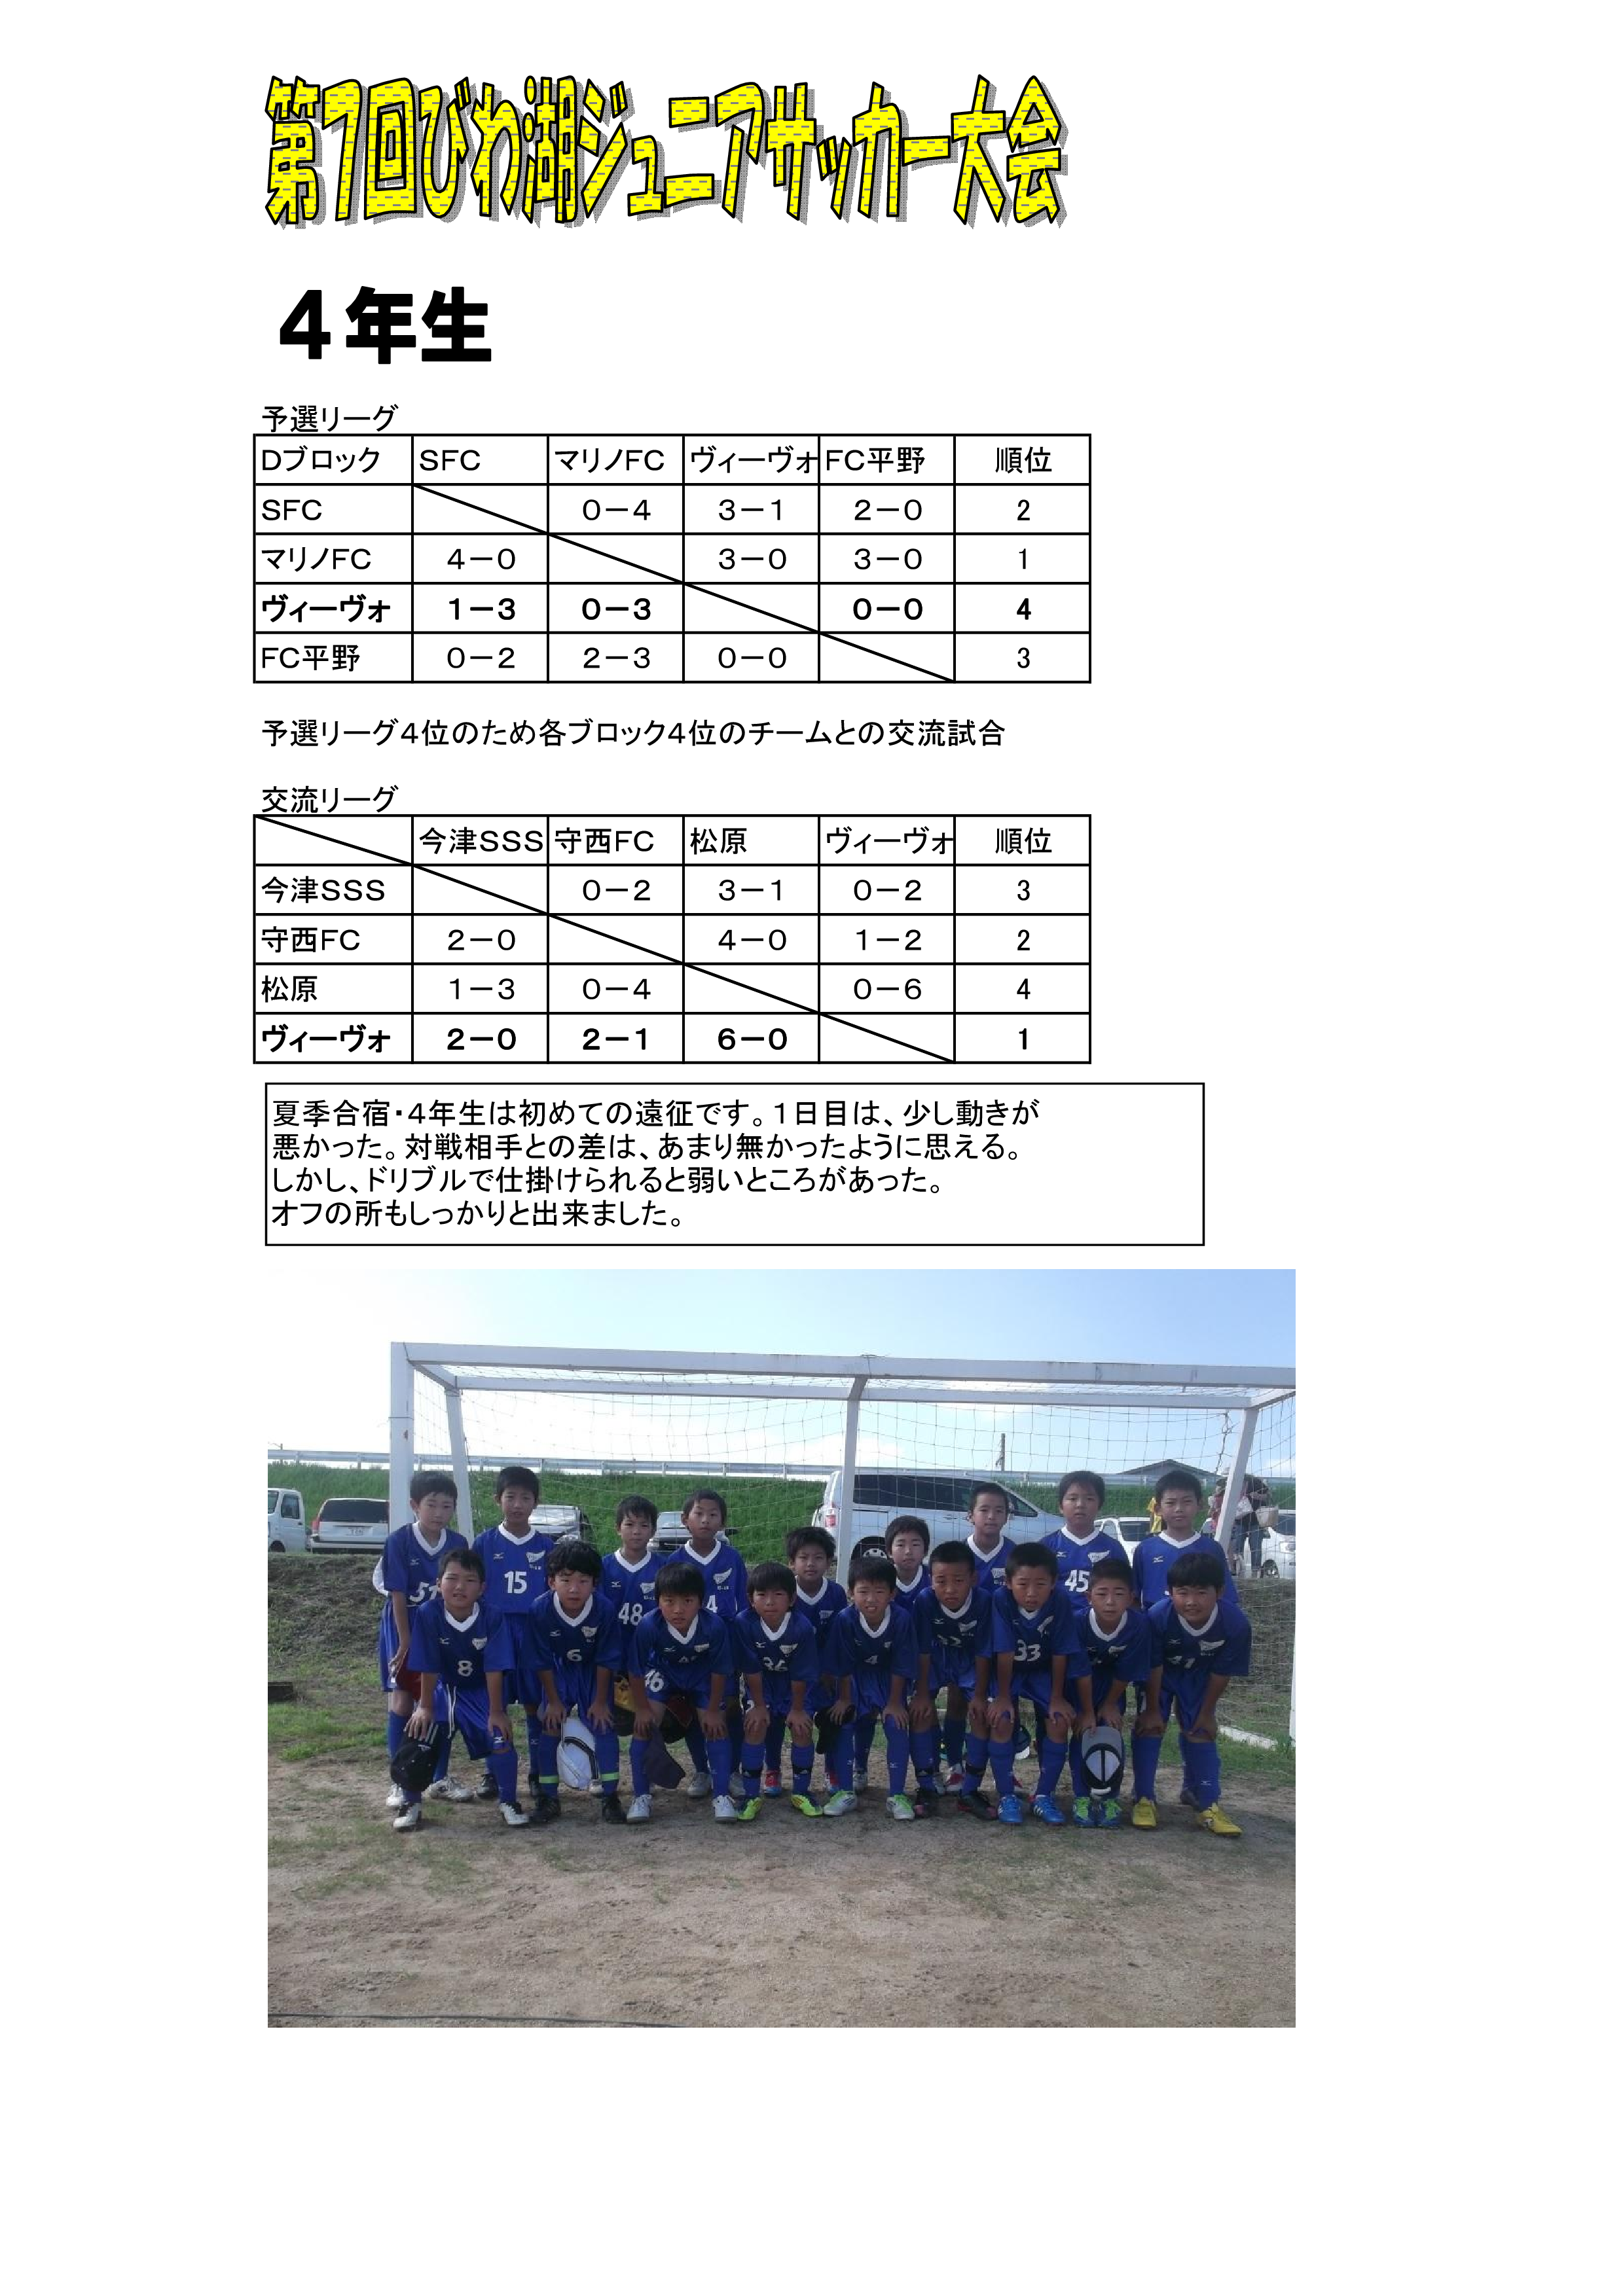 スポーツクラブ和歌山ヴィーヴォ Vivo 公式サイト 和歌山の小学生 Jr 中学生 Jrユース のクラブユースサッカーチームです